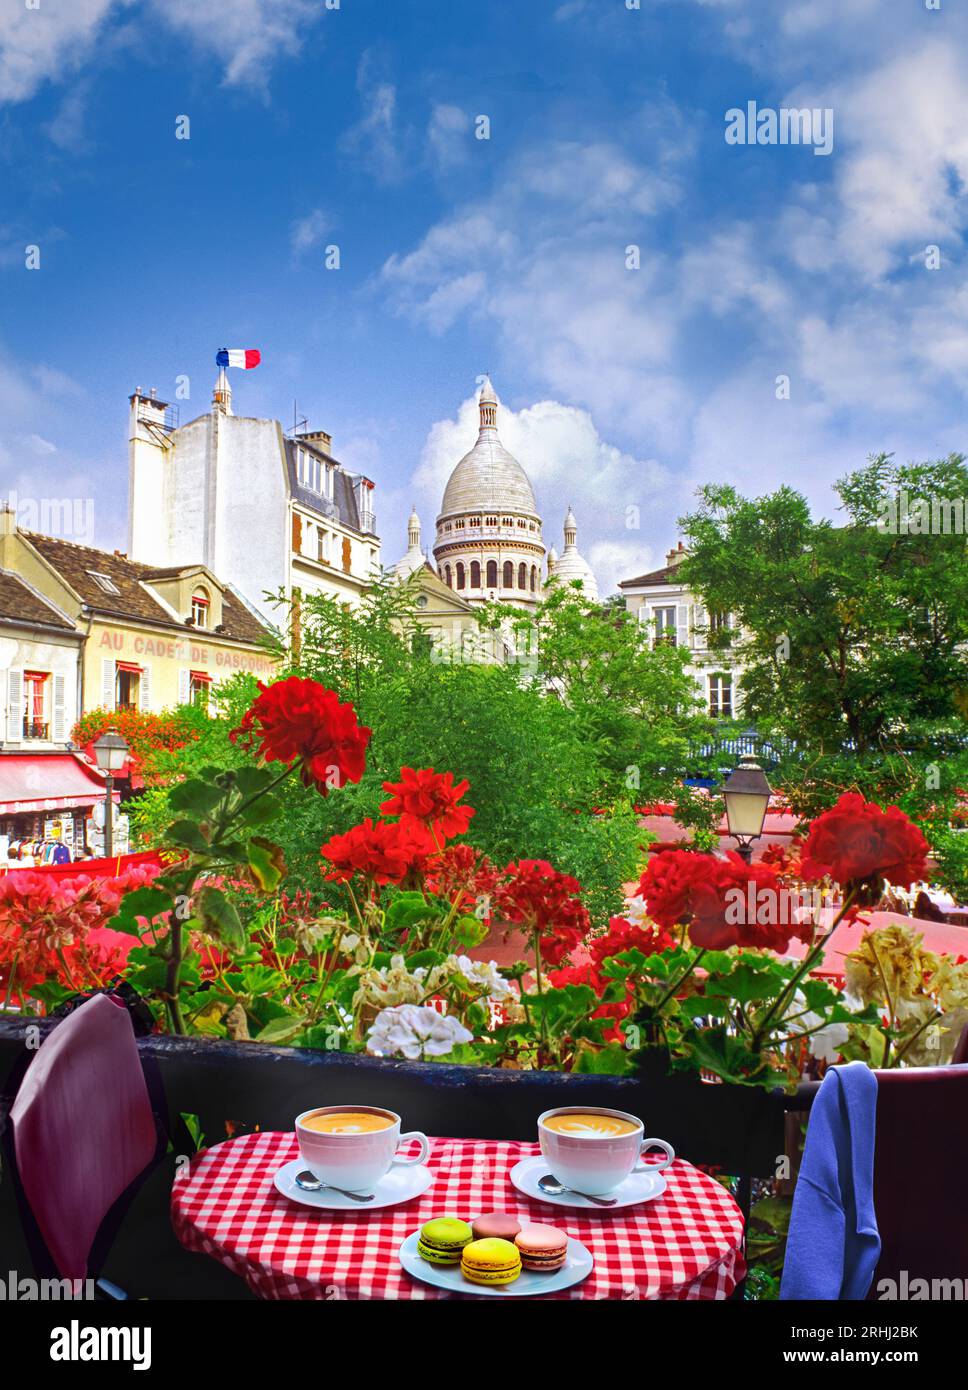 Paris Café Restaurant Montmartre Blick auf Blumen Tisch Kaffee & Kuchen Makronen französische Tischdecke mit Blick auf den Place du Terte, Sacre Coeur Paris Frankreich Stockfoto